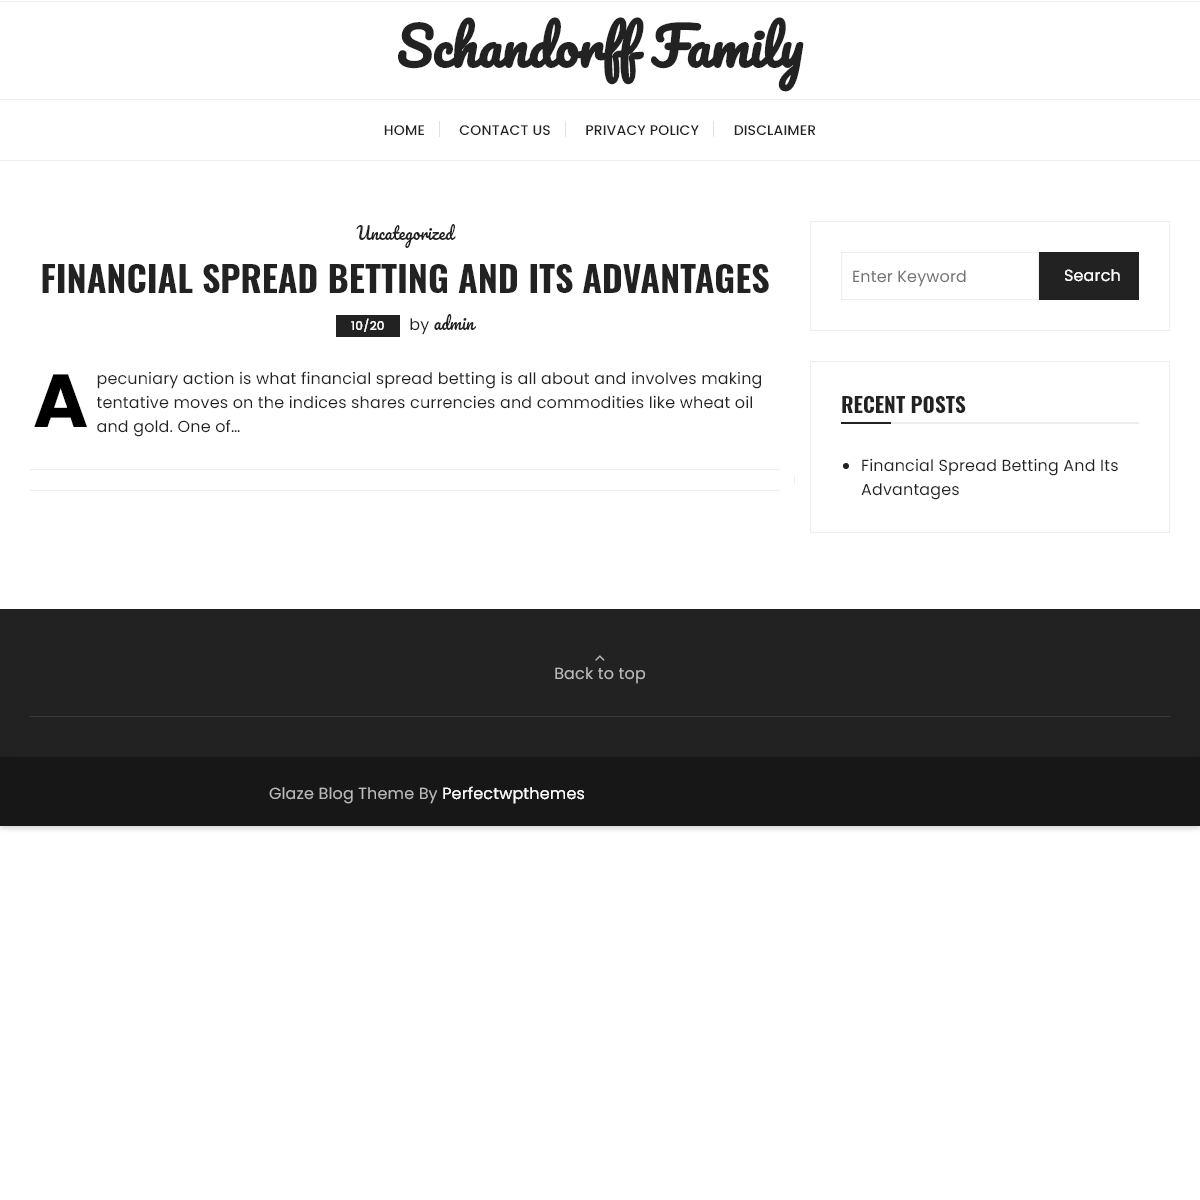 A complete backup of schandorfffamily.com